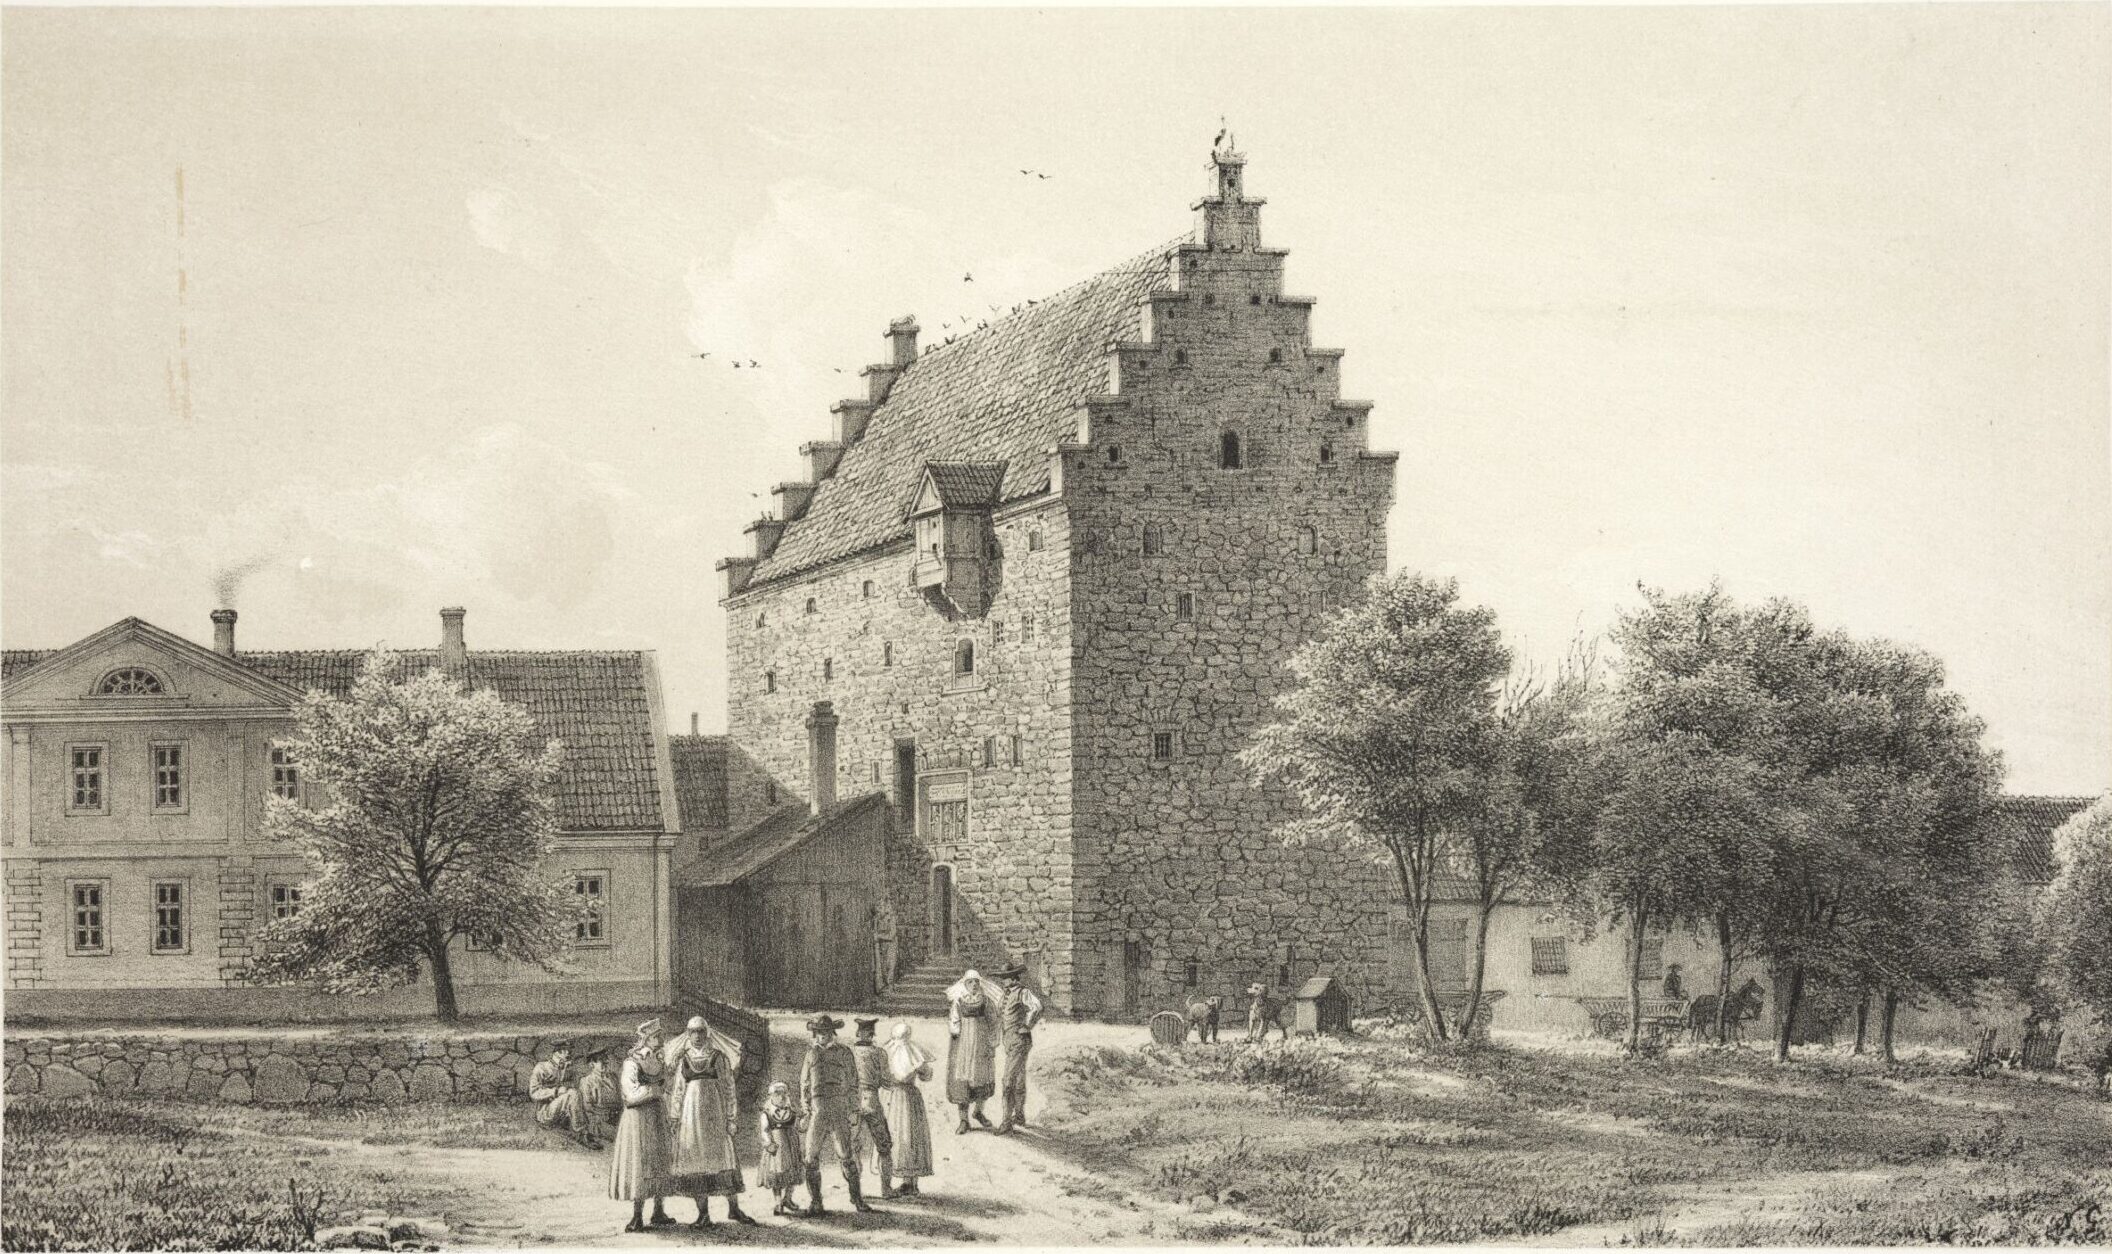 En illustration av Glimmingehus på 1800-talet, med borgen i mitten och ett lägre hus från 1700-talet till vänster. Några träd till höger. I förgrunden människor i allmogekläder